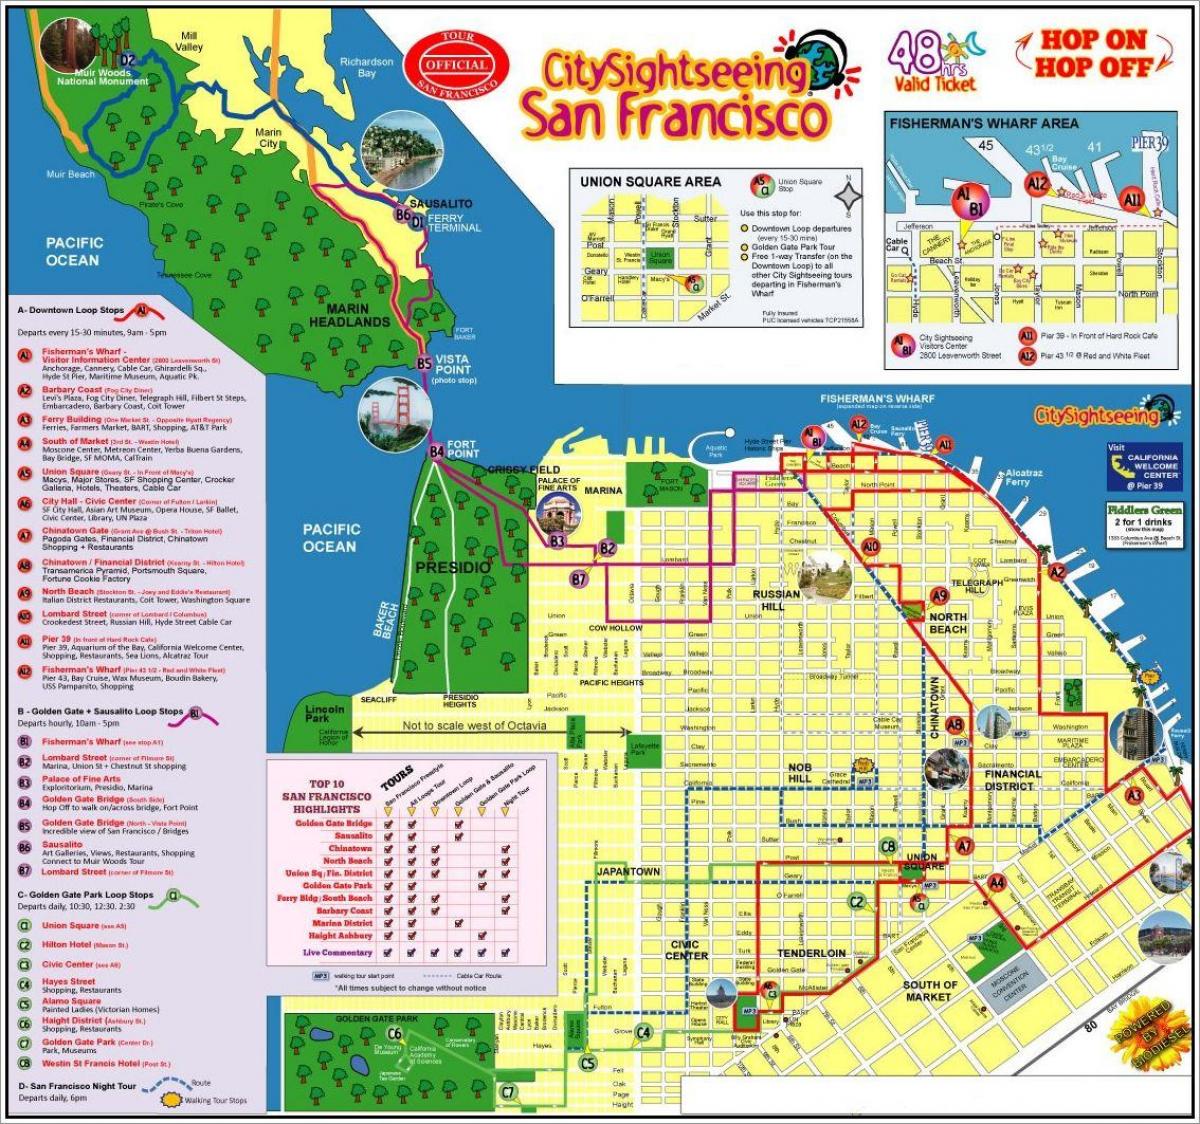 хот Сан Франциско хоттой аялал жуулчлалын газрын зураг